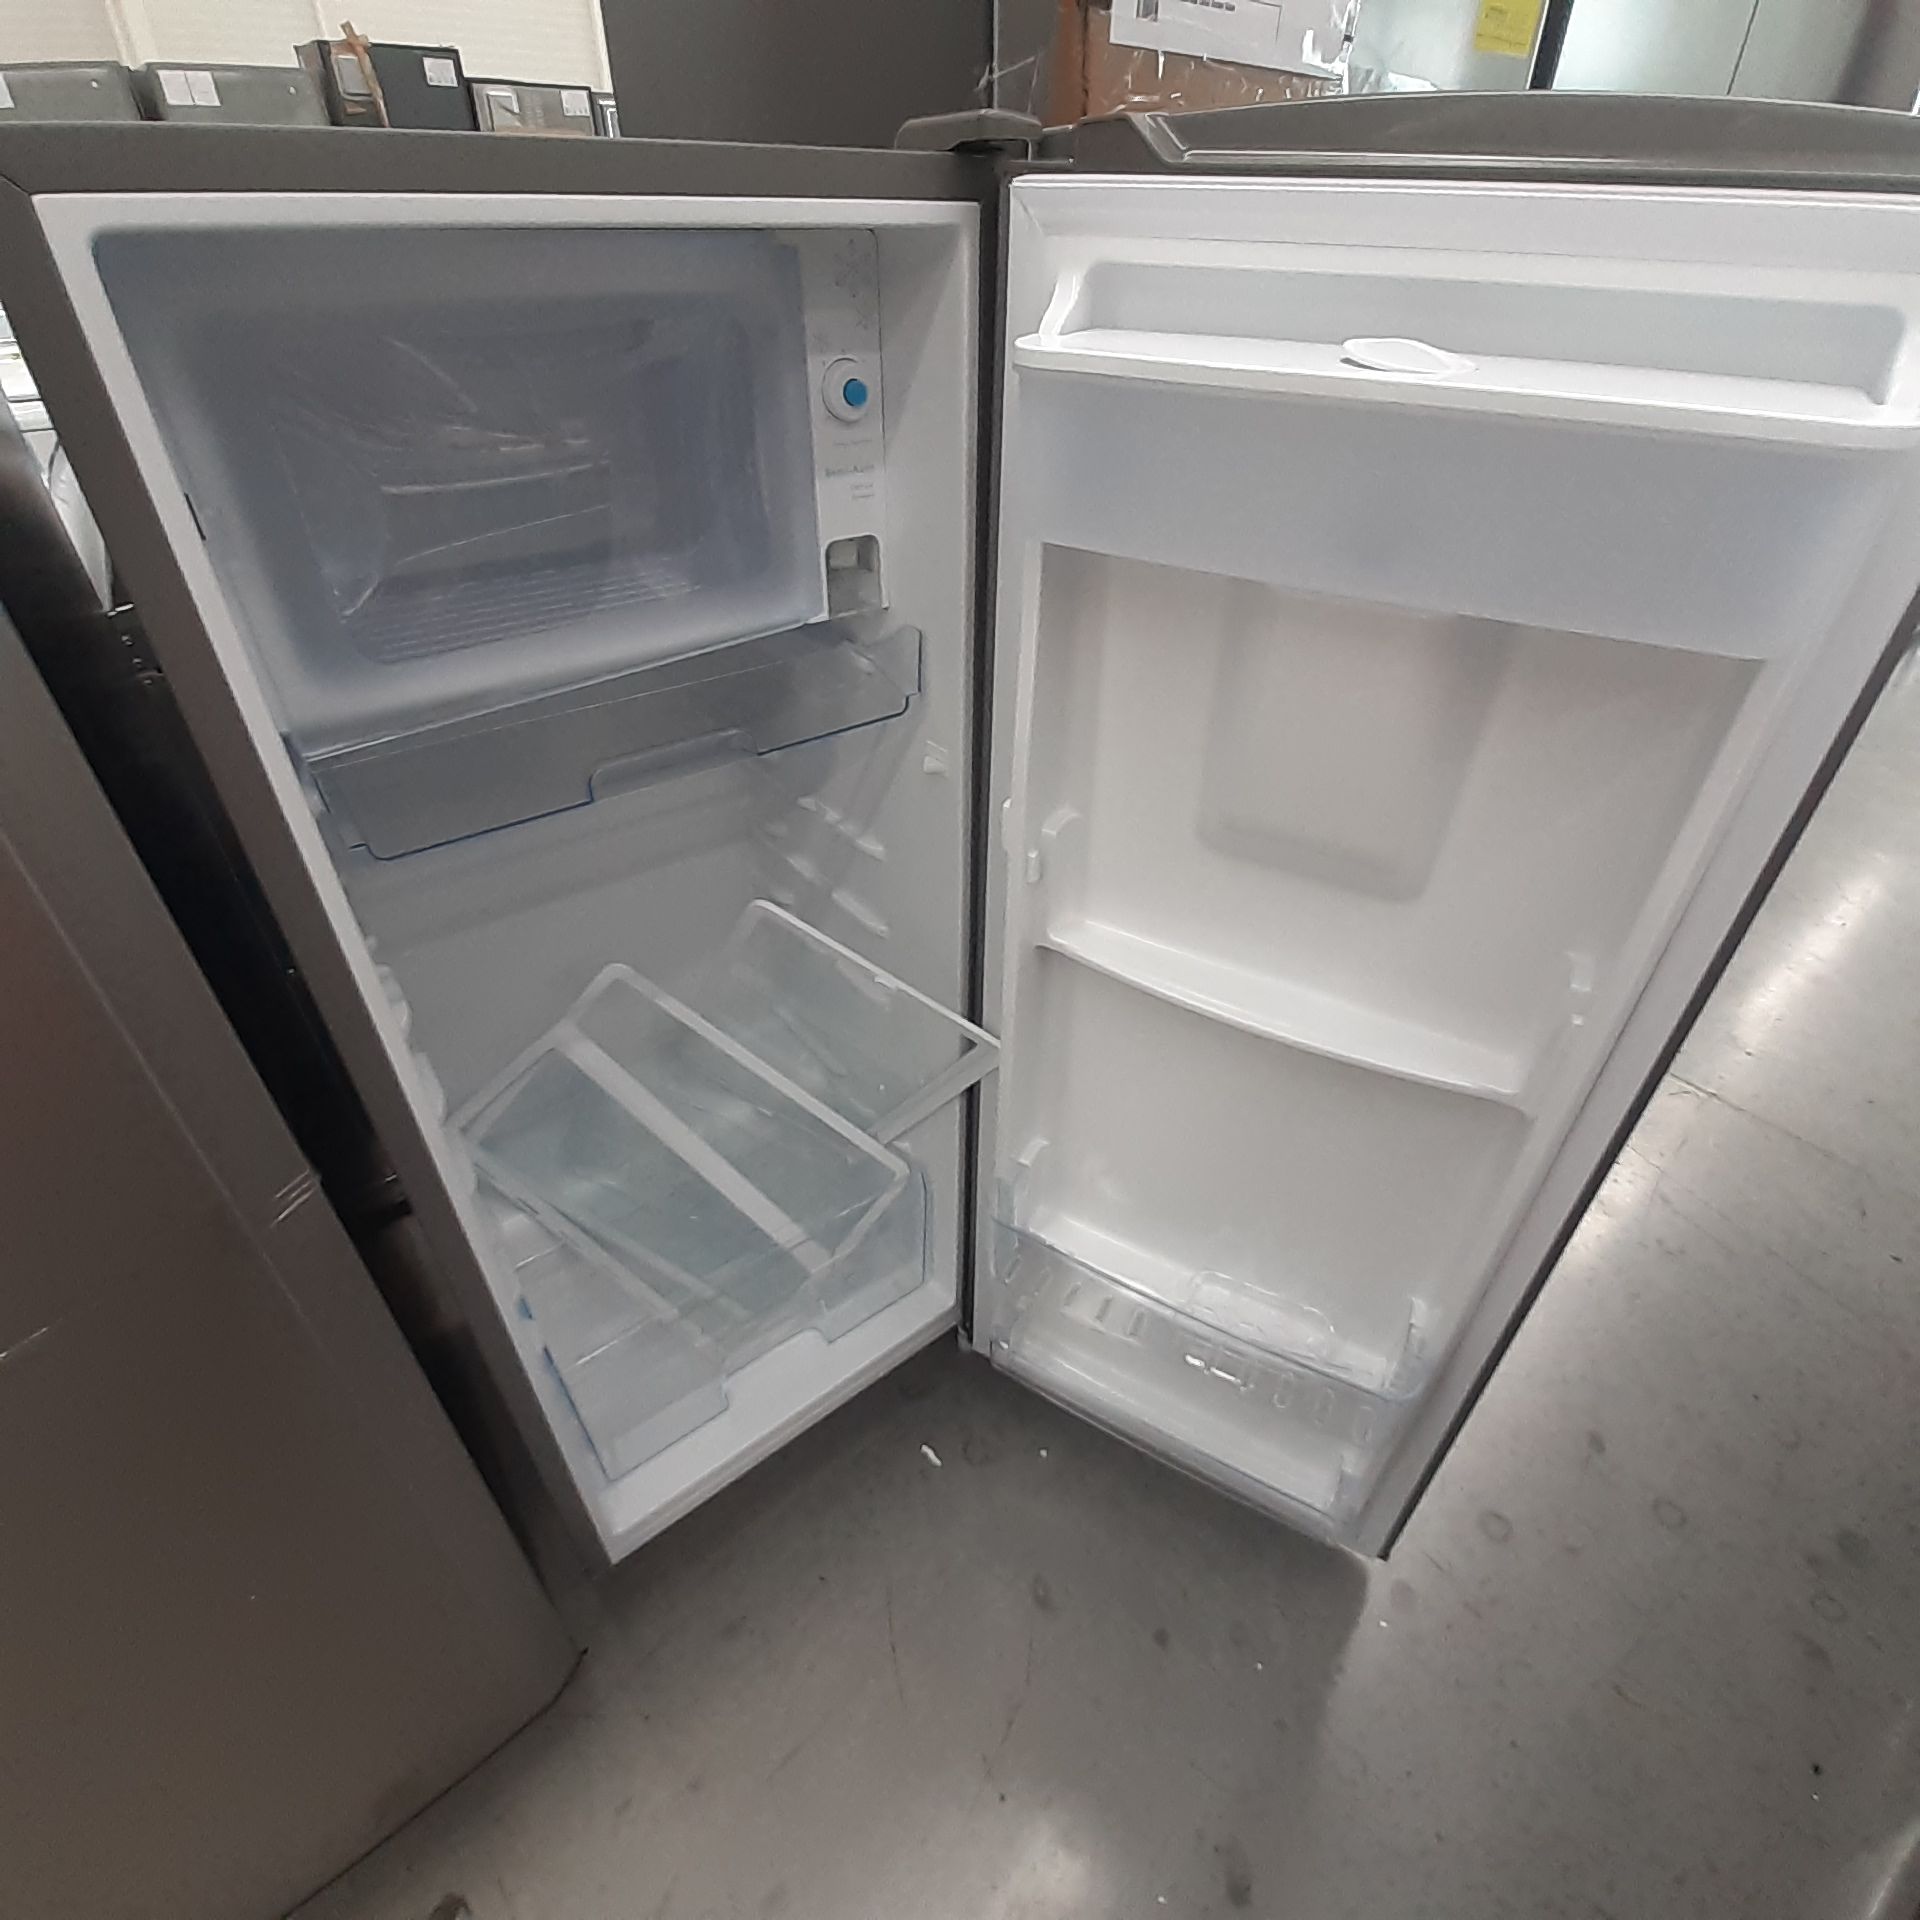 Lote De 3 Refrigeradores: 1 Refrigerador Marca Whirlpool, 1 Refrigerador Marca Mabe, 1 Refrigerador - Image 17 of 22